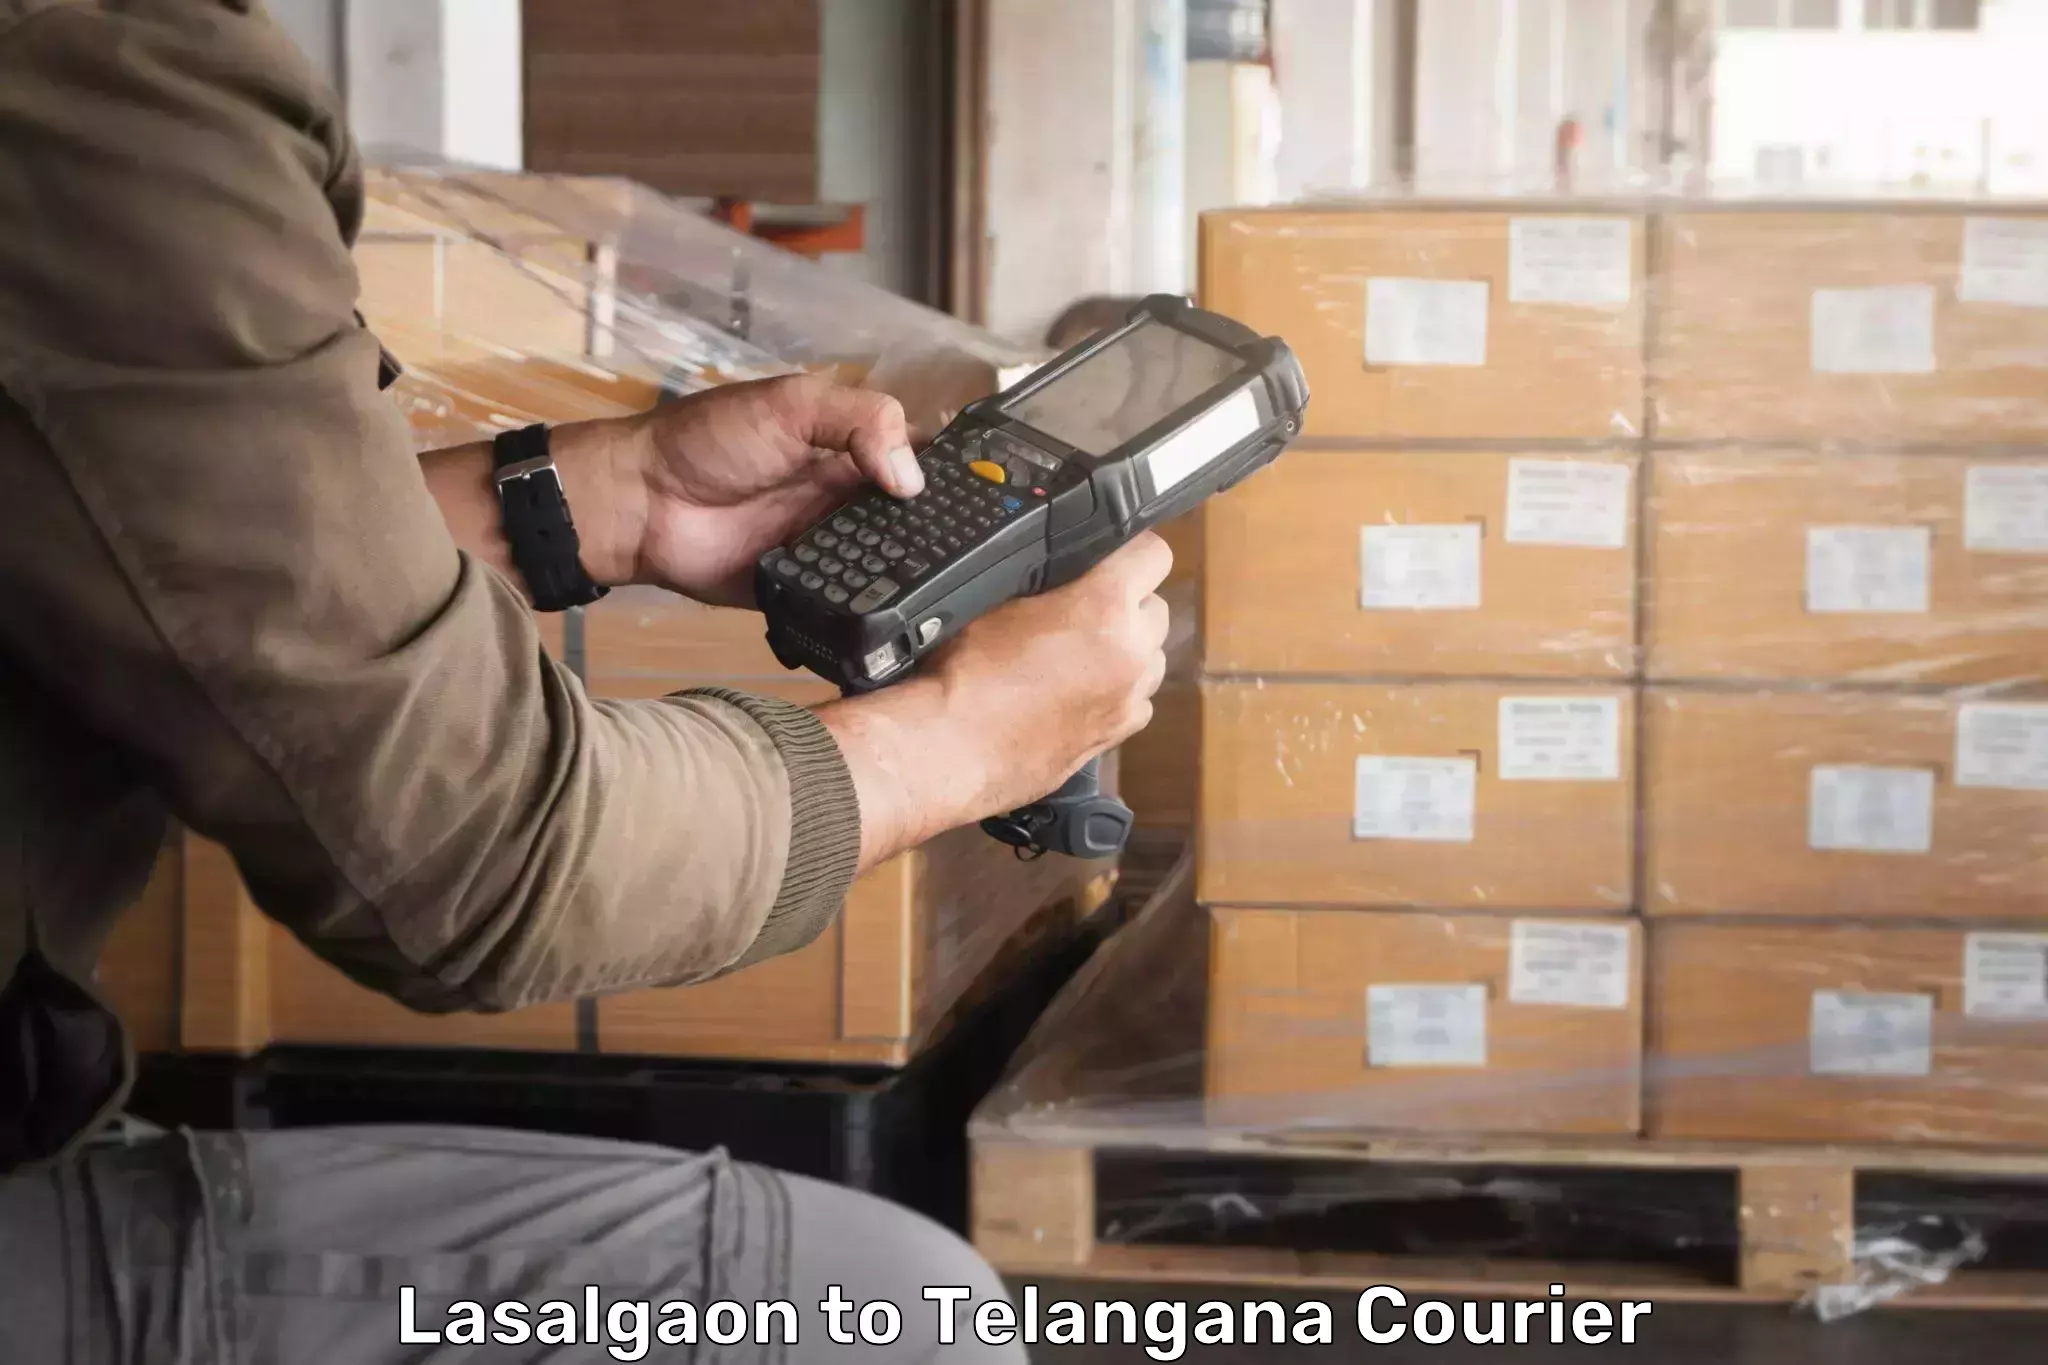 Express delivery capabilities Lasalgaon to Jogulamba Gadwal